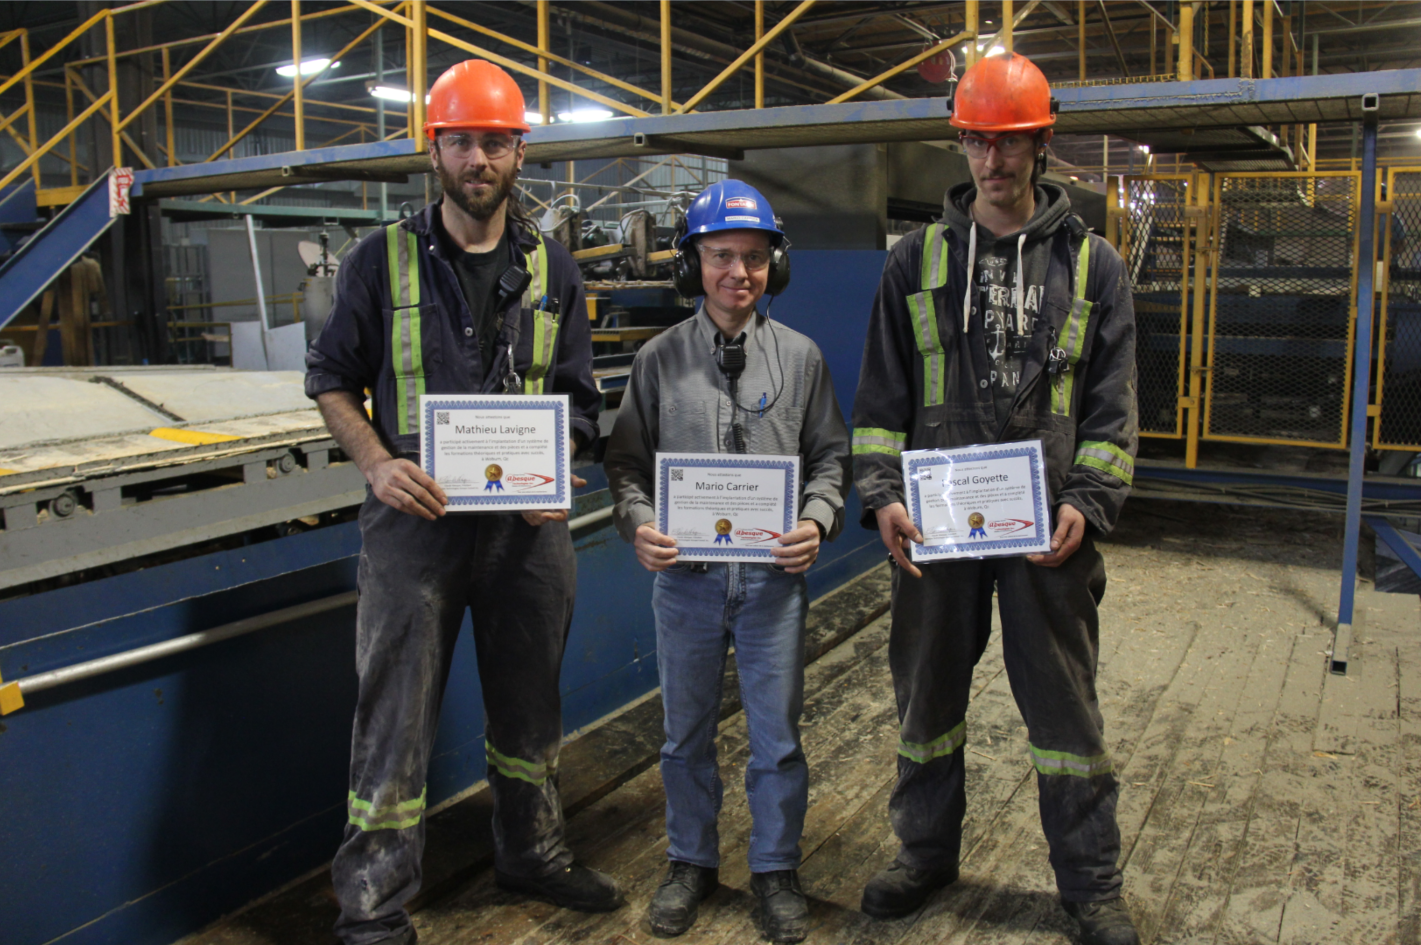 De gauche à droite : Mathieu Lavigne chef mécanicien, Mario Carrier directeur d'usine et Pascal Goyette mécanicien chez Fontaine inc. Woburn, 2016